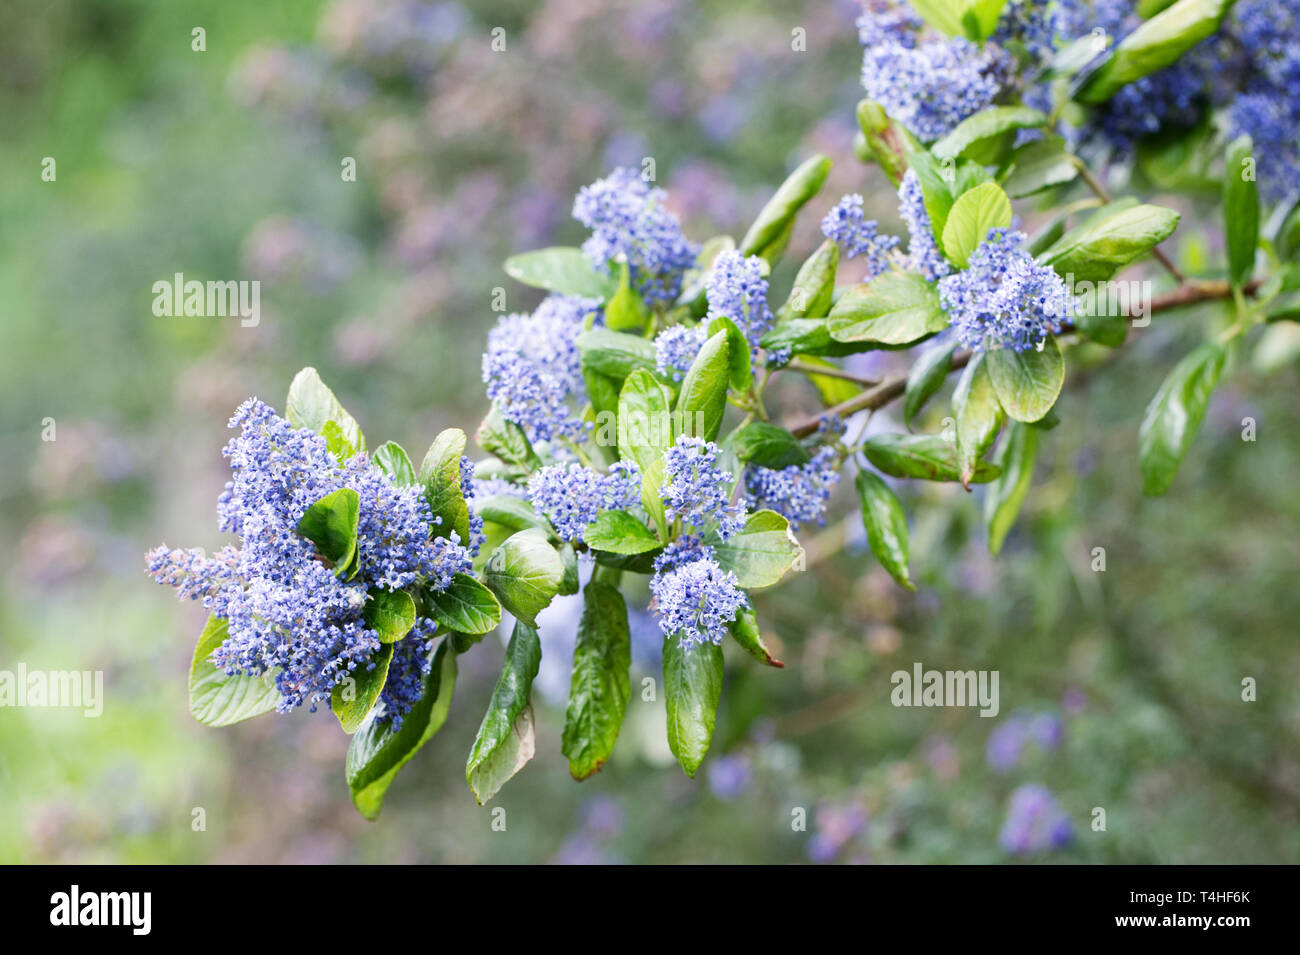 Ceanothus arboreus 'Trewithin Blue' flowers. Stock Photo